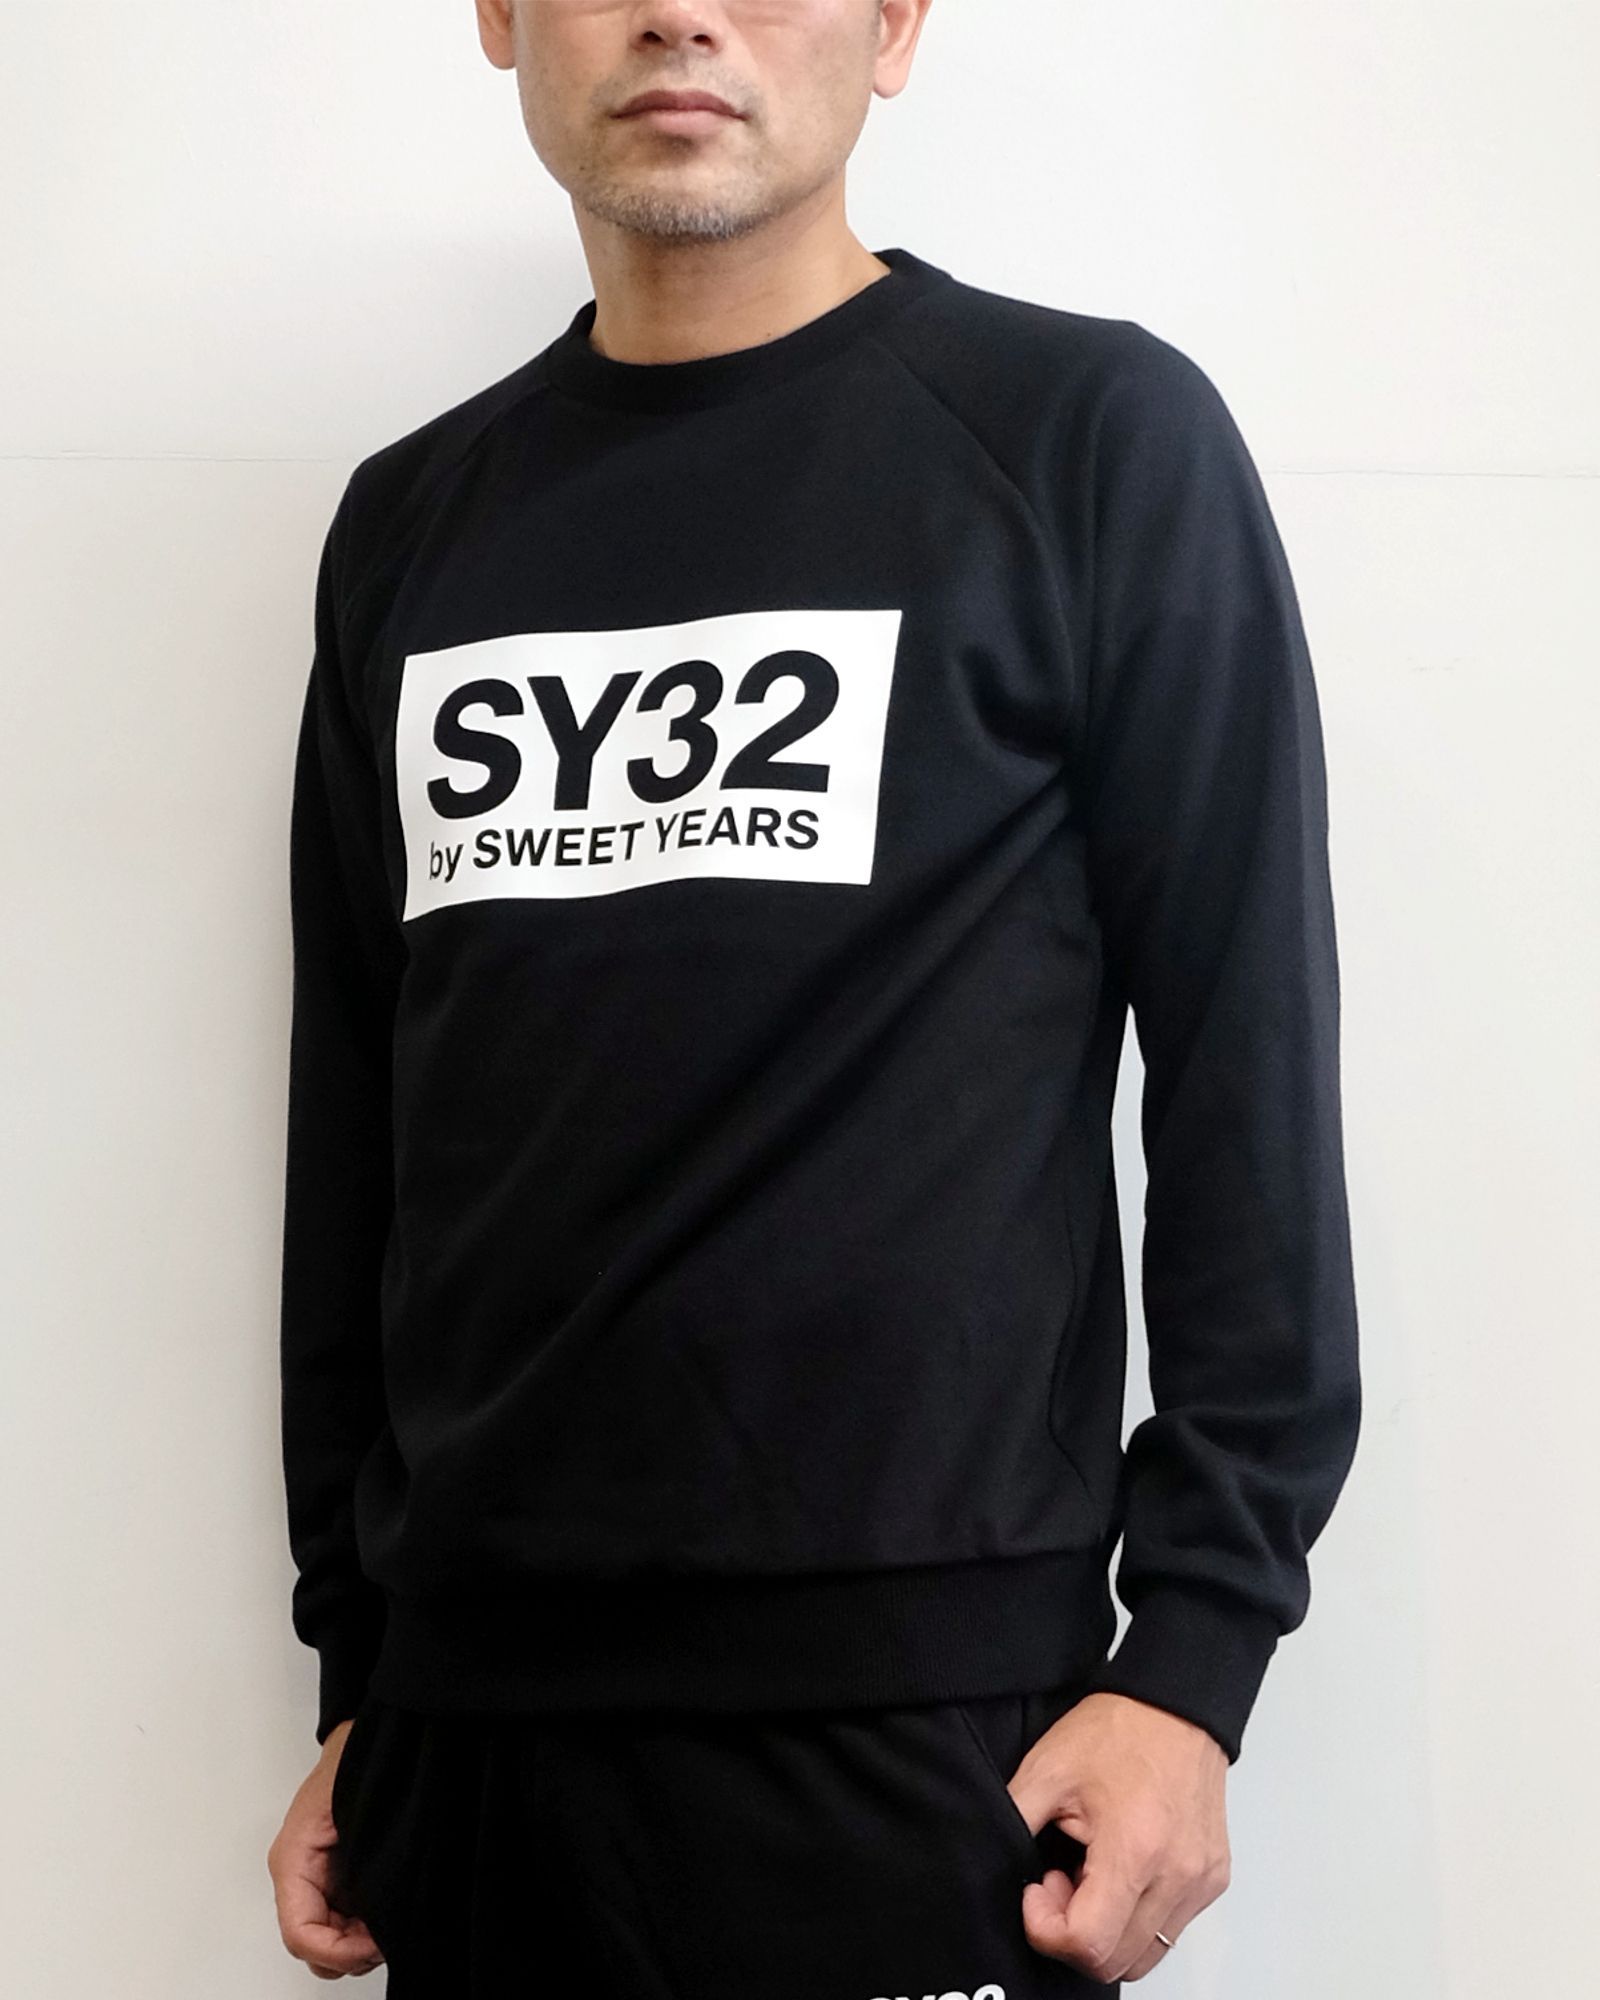 SY32 by SWEET YEARS - 【S 残り1】【即日発送可】 プルオーバー 